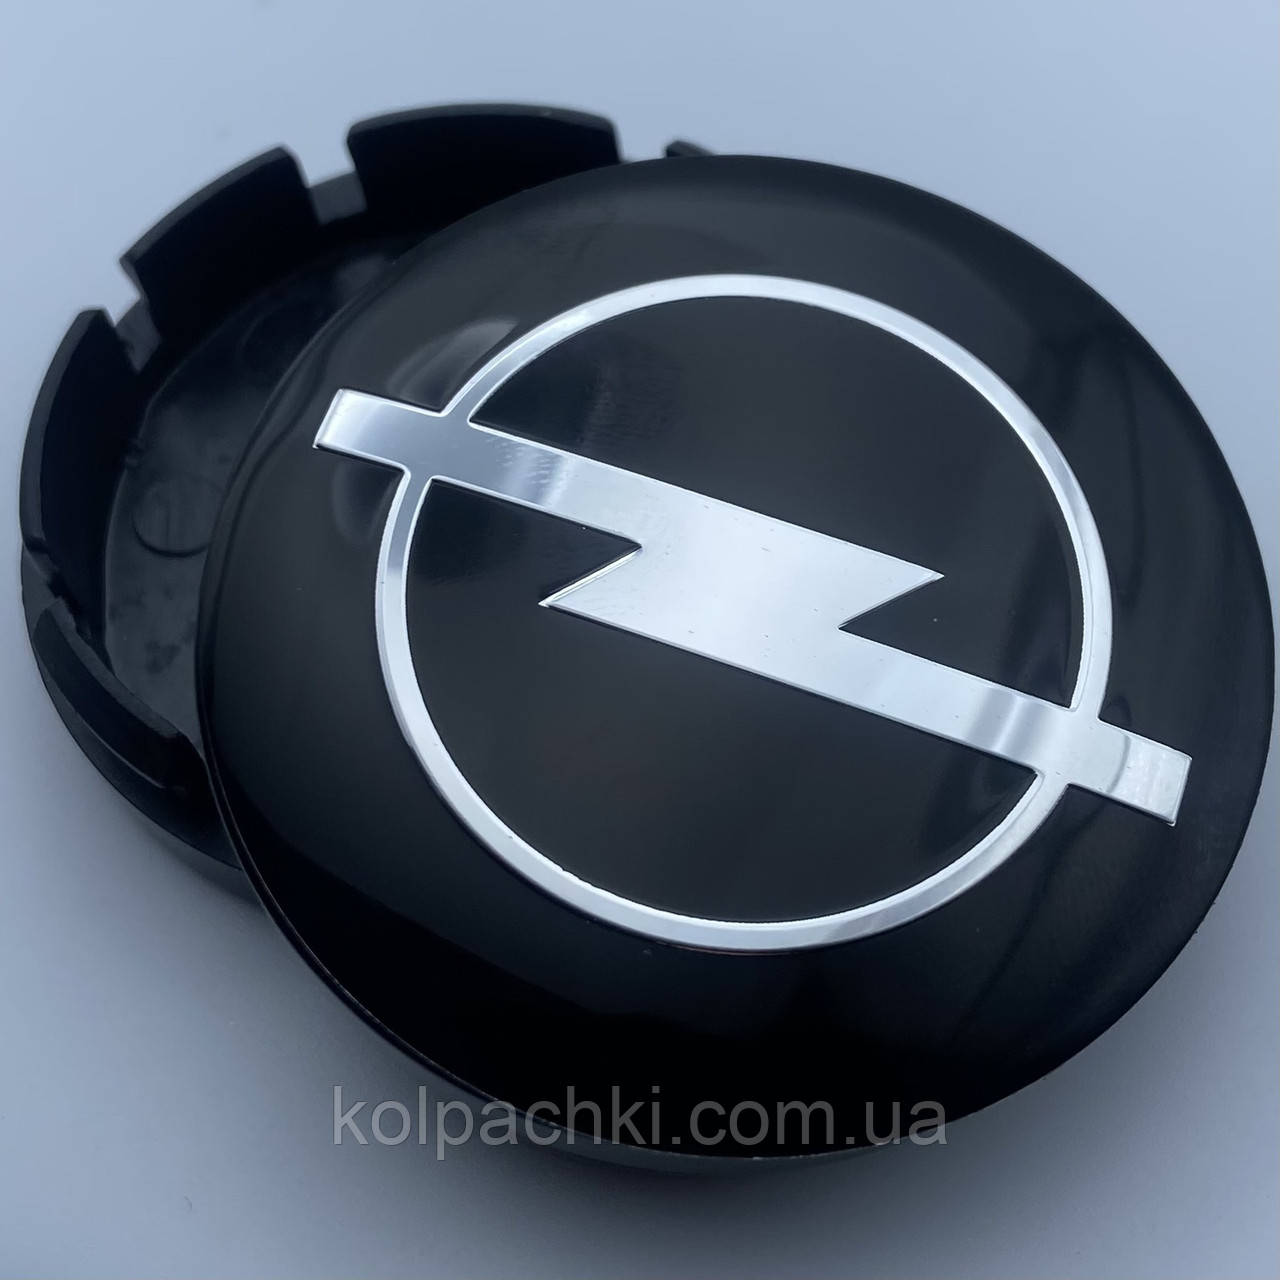 Ковпачок для дисків Borbet RIAL з логотипом Opel 56 мм 51 bмм чорні